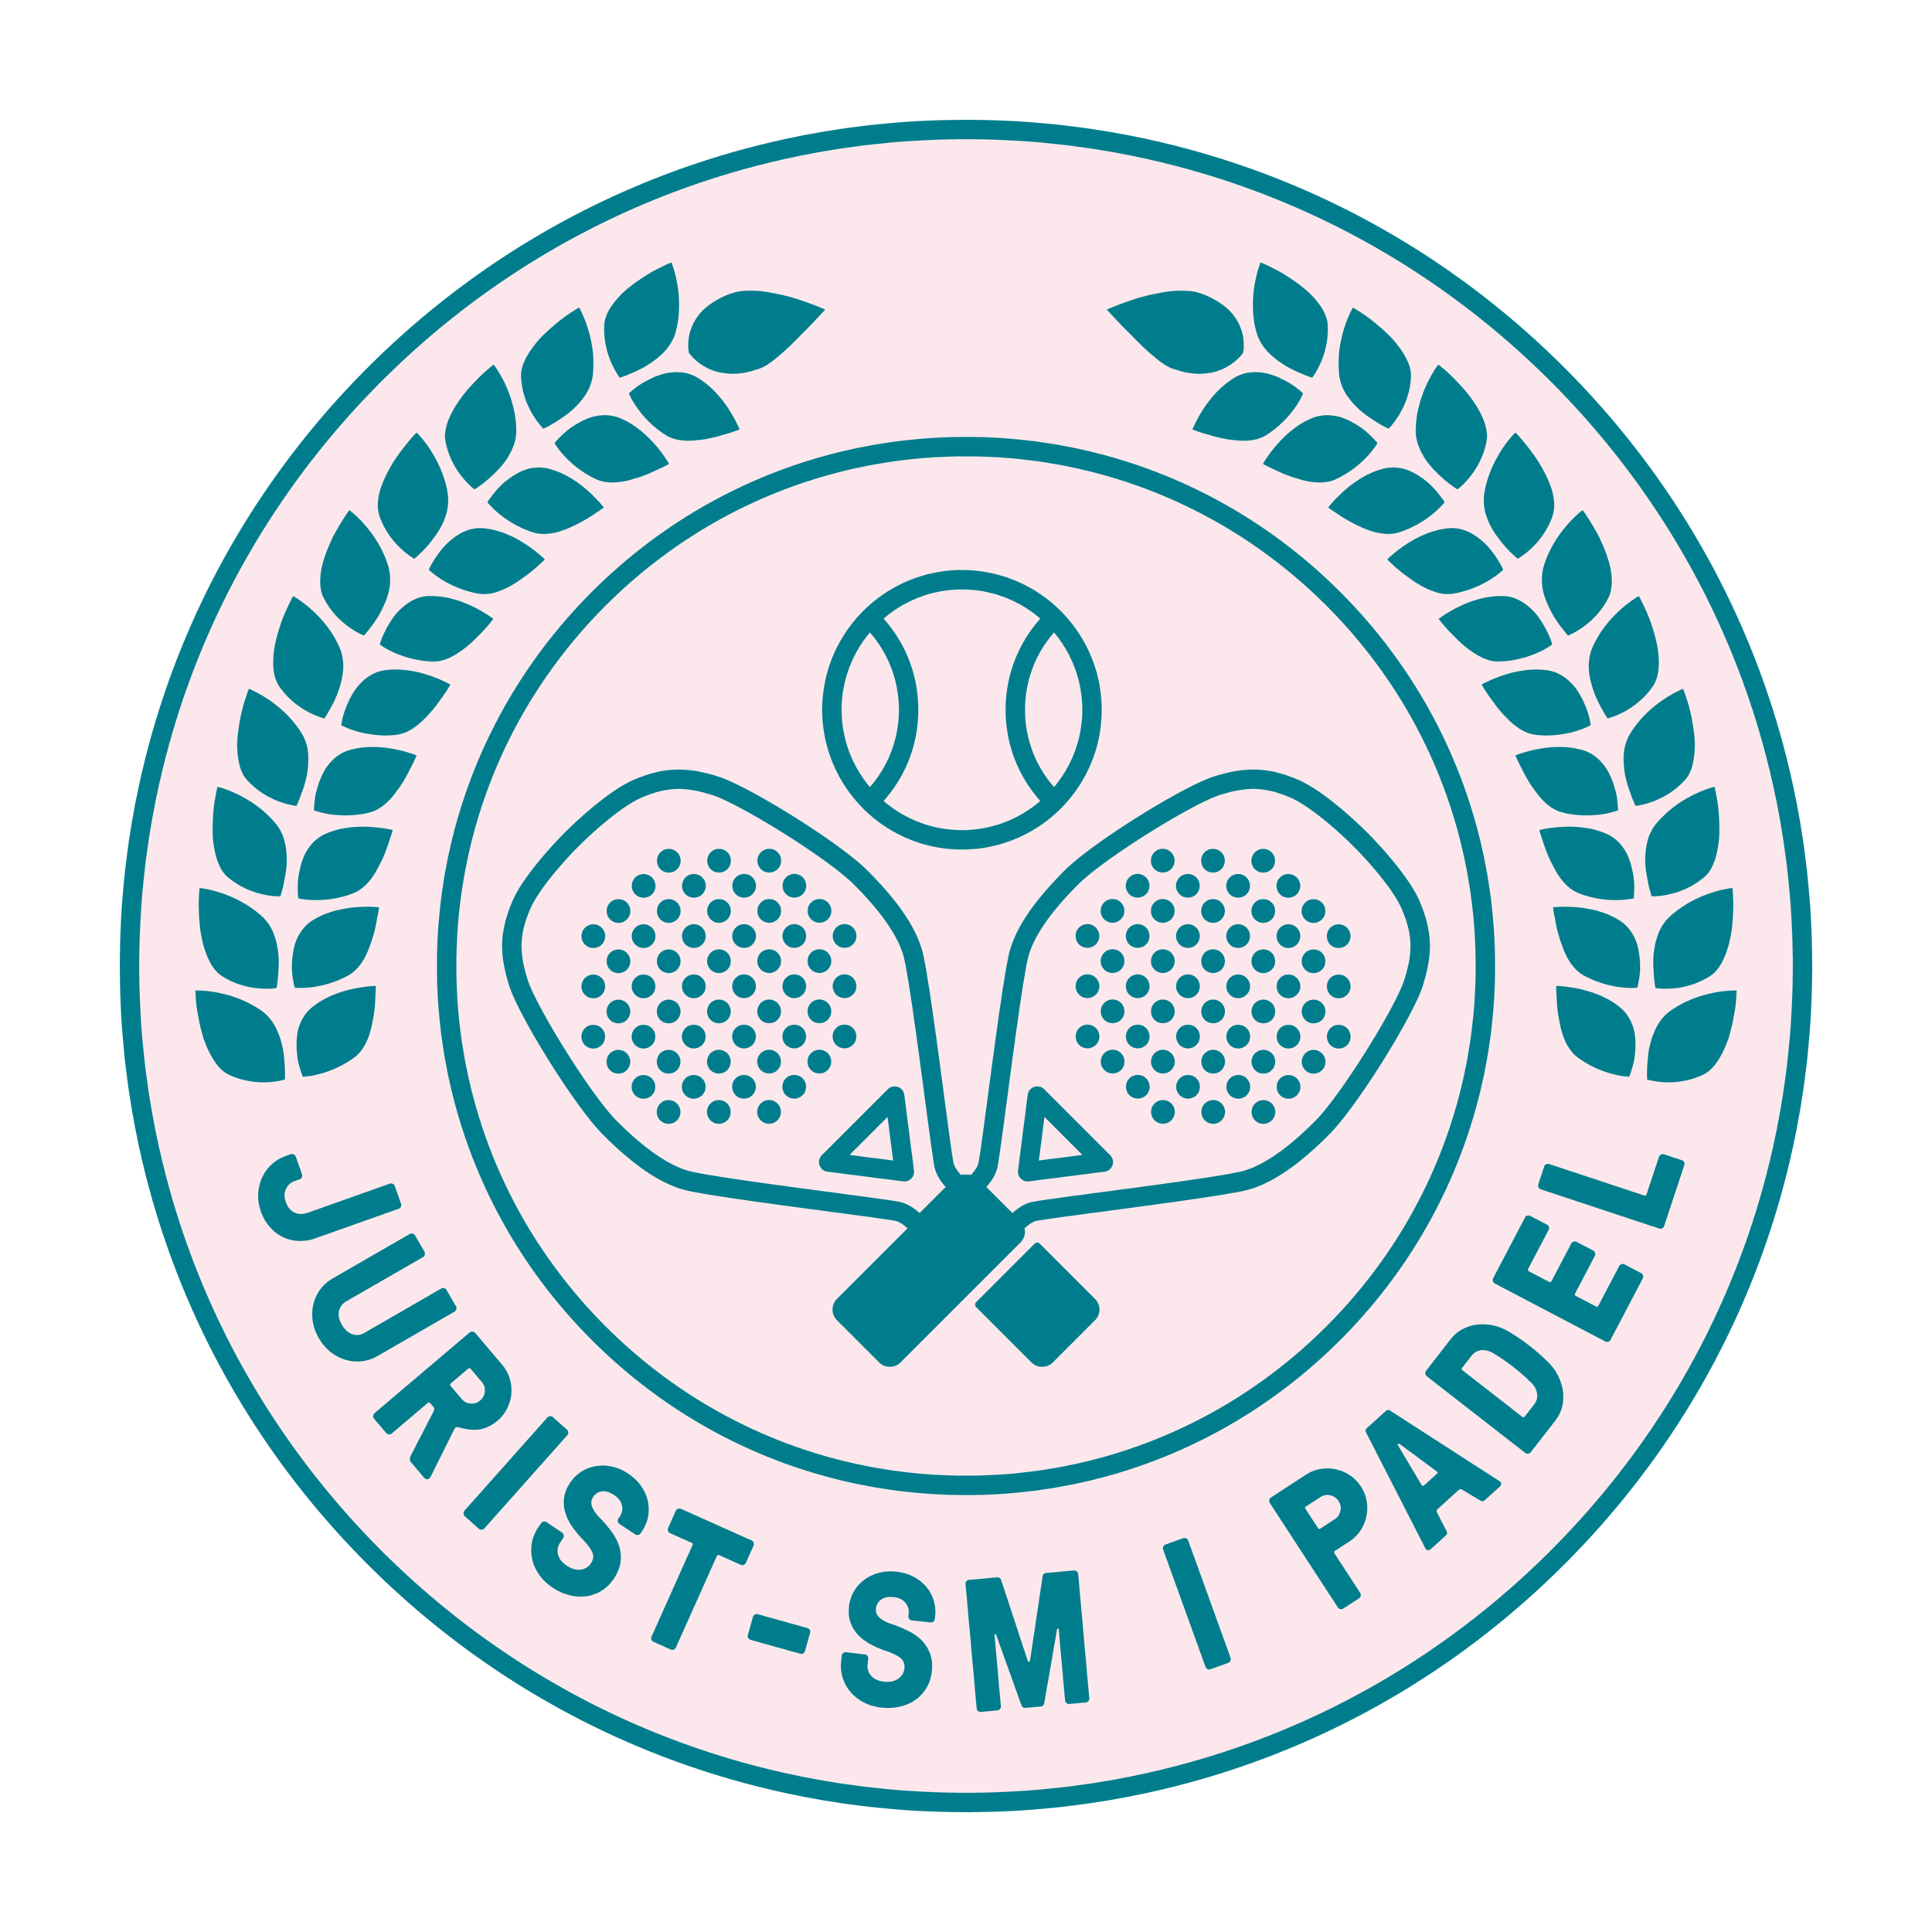 padel-sm logo färg.png